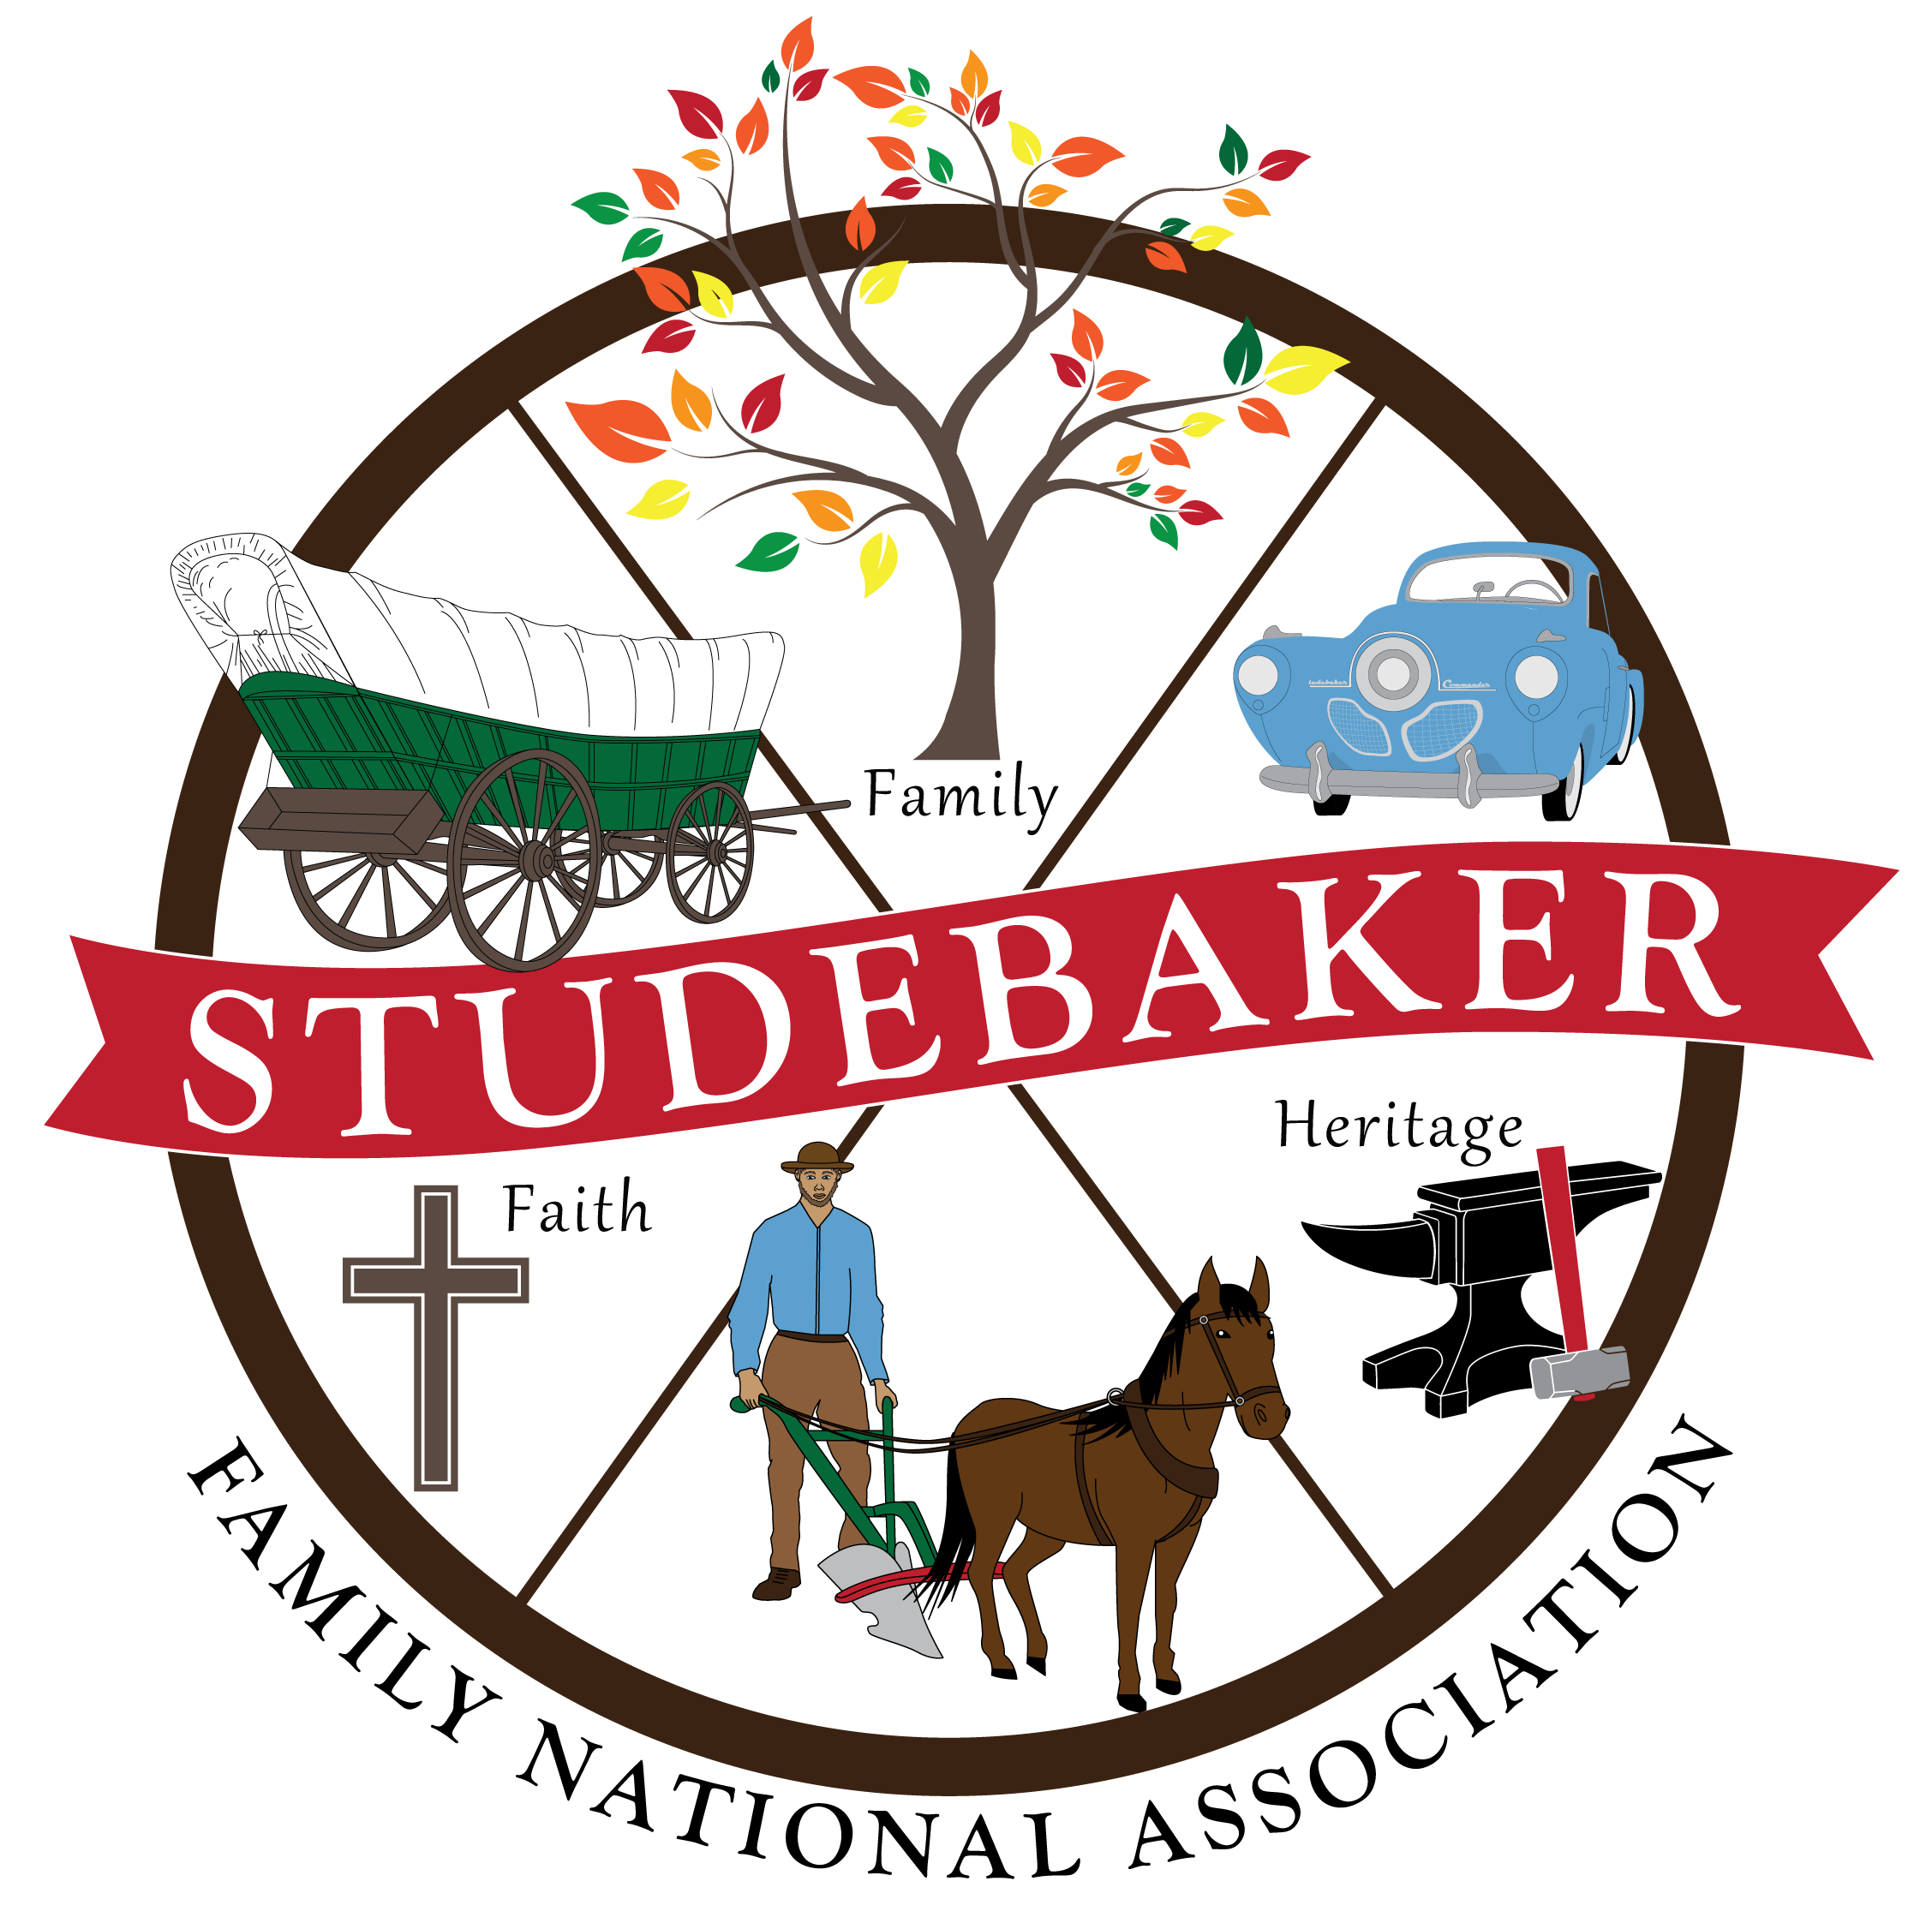 The Studebaker Family National Association